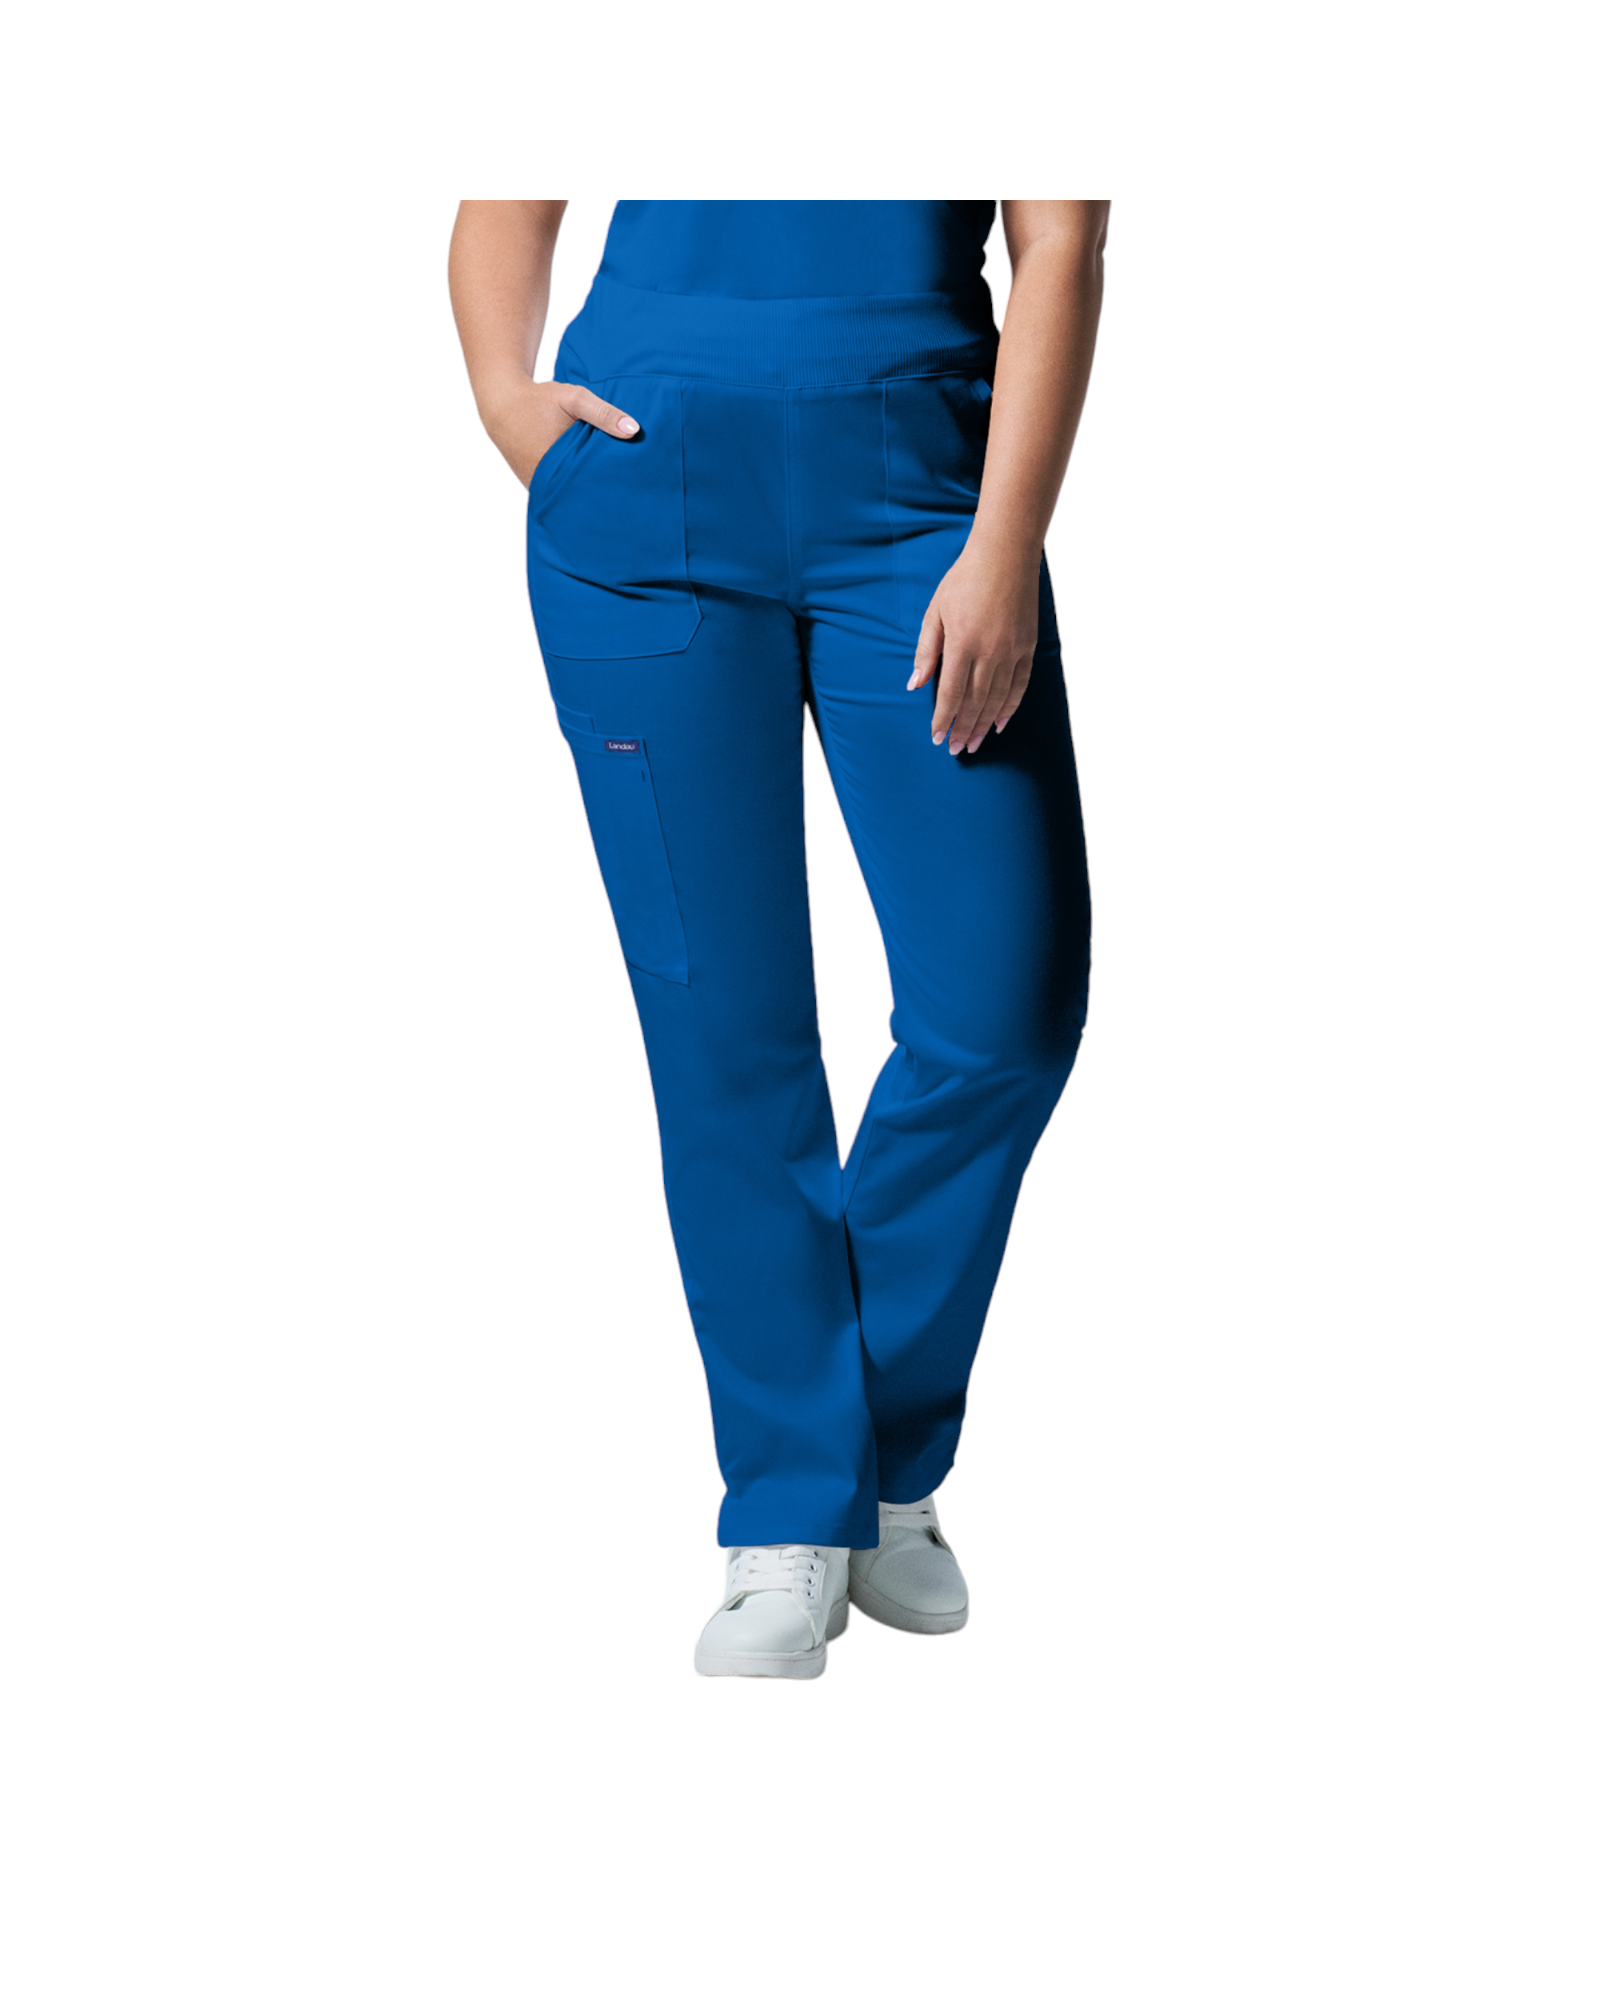 Pantalons 6 poches pour femmes Landau Proflex #LB405 OS couleur Royal